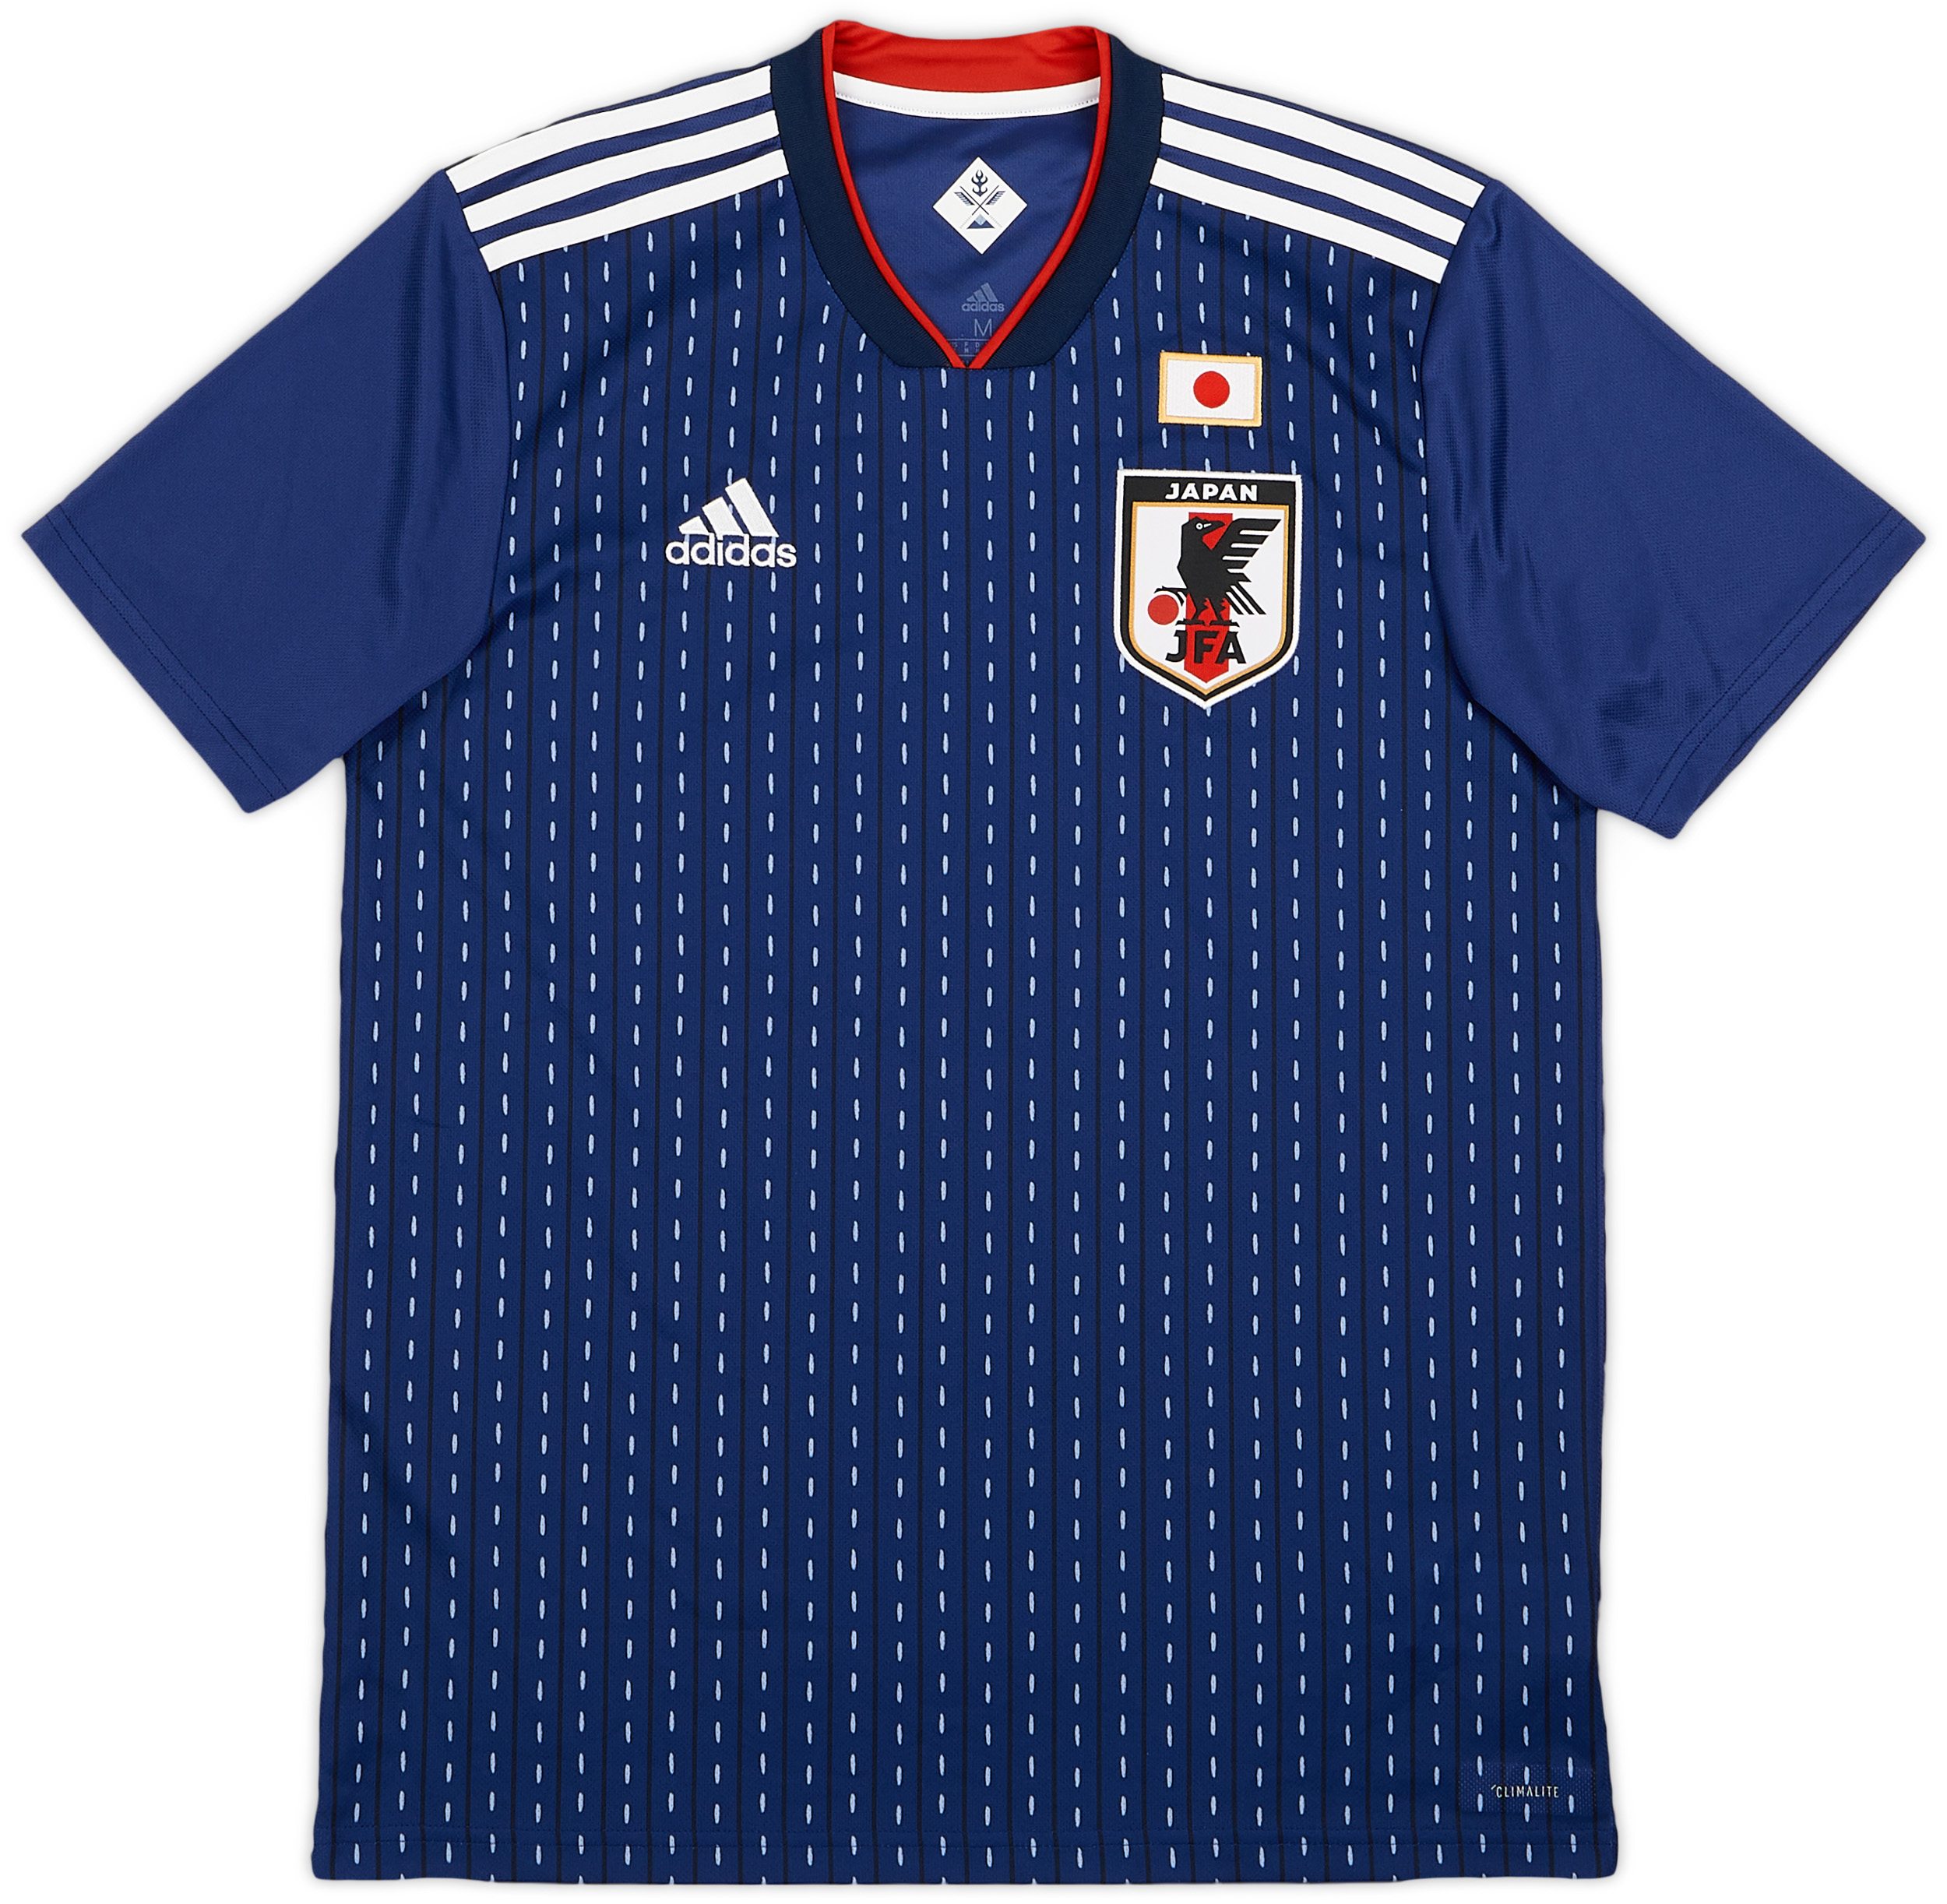 Japan  home shirt  (Original)